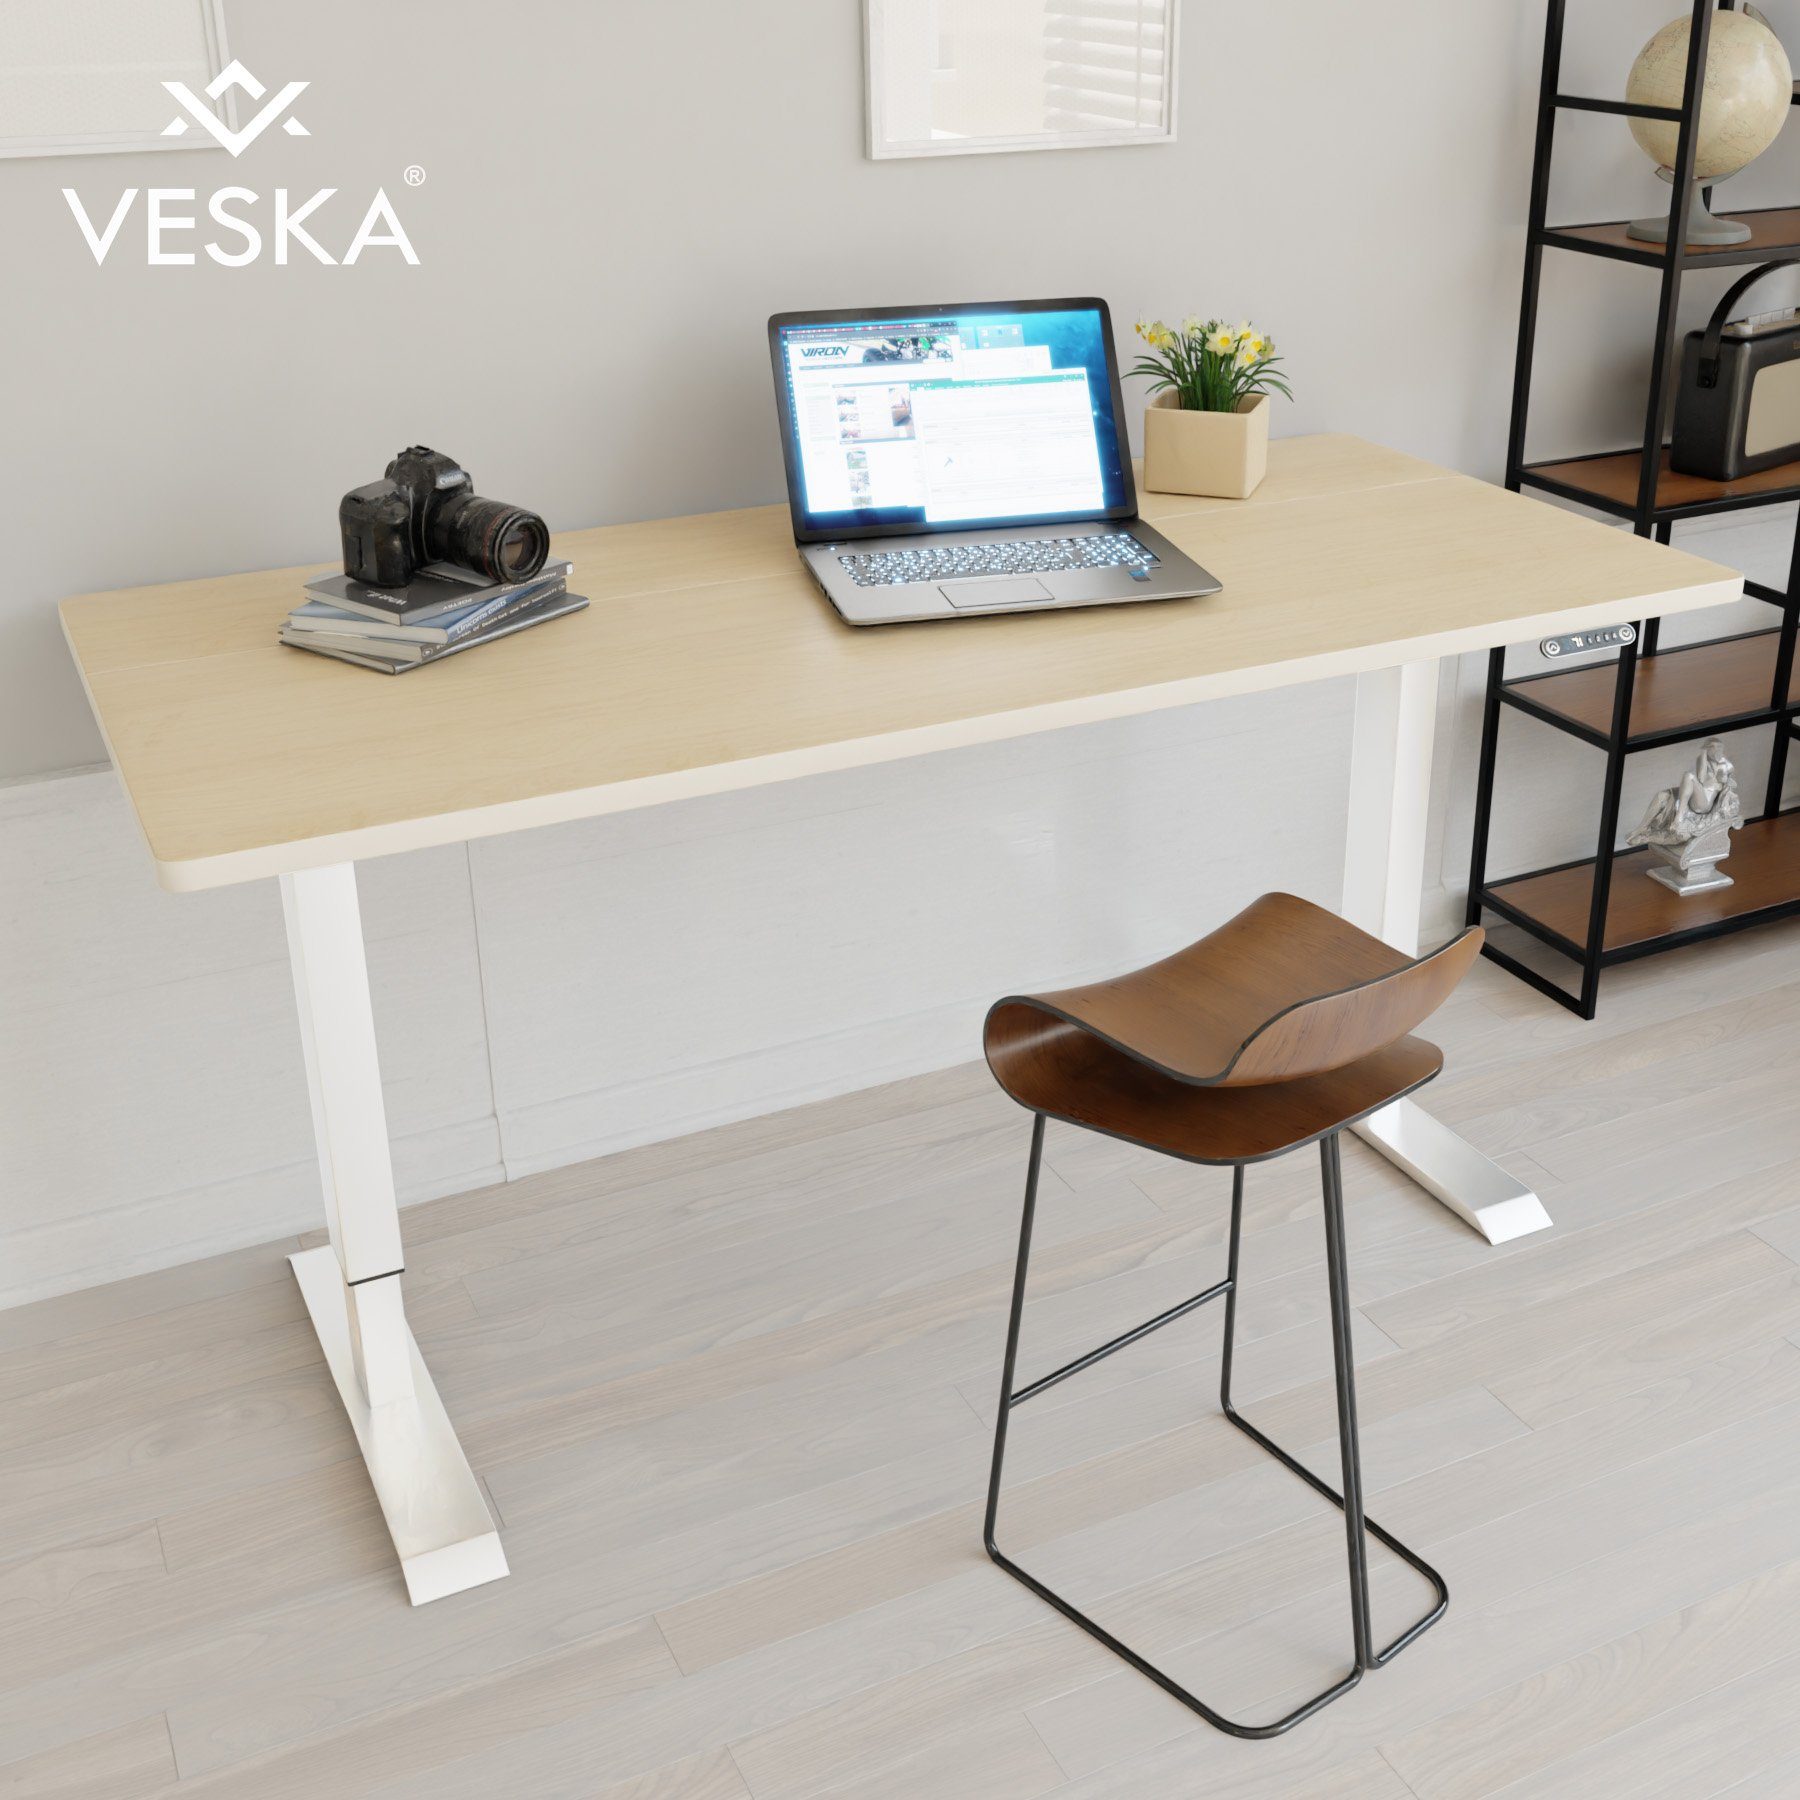 VESKA Schreibtisch Höhenverstellbar 140 x 70 cm - Bürotisch Elektrisch mit Touchscreen - Sitz- & Stehpult Home Office Weiß | Bambus